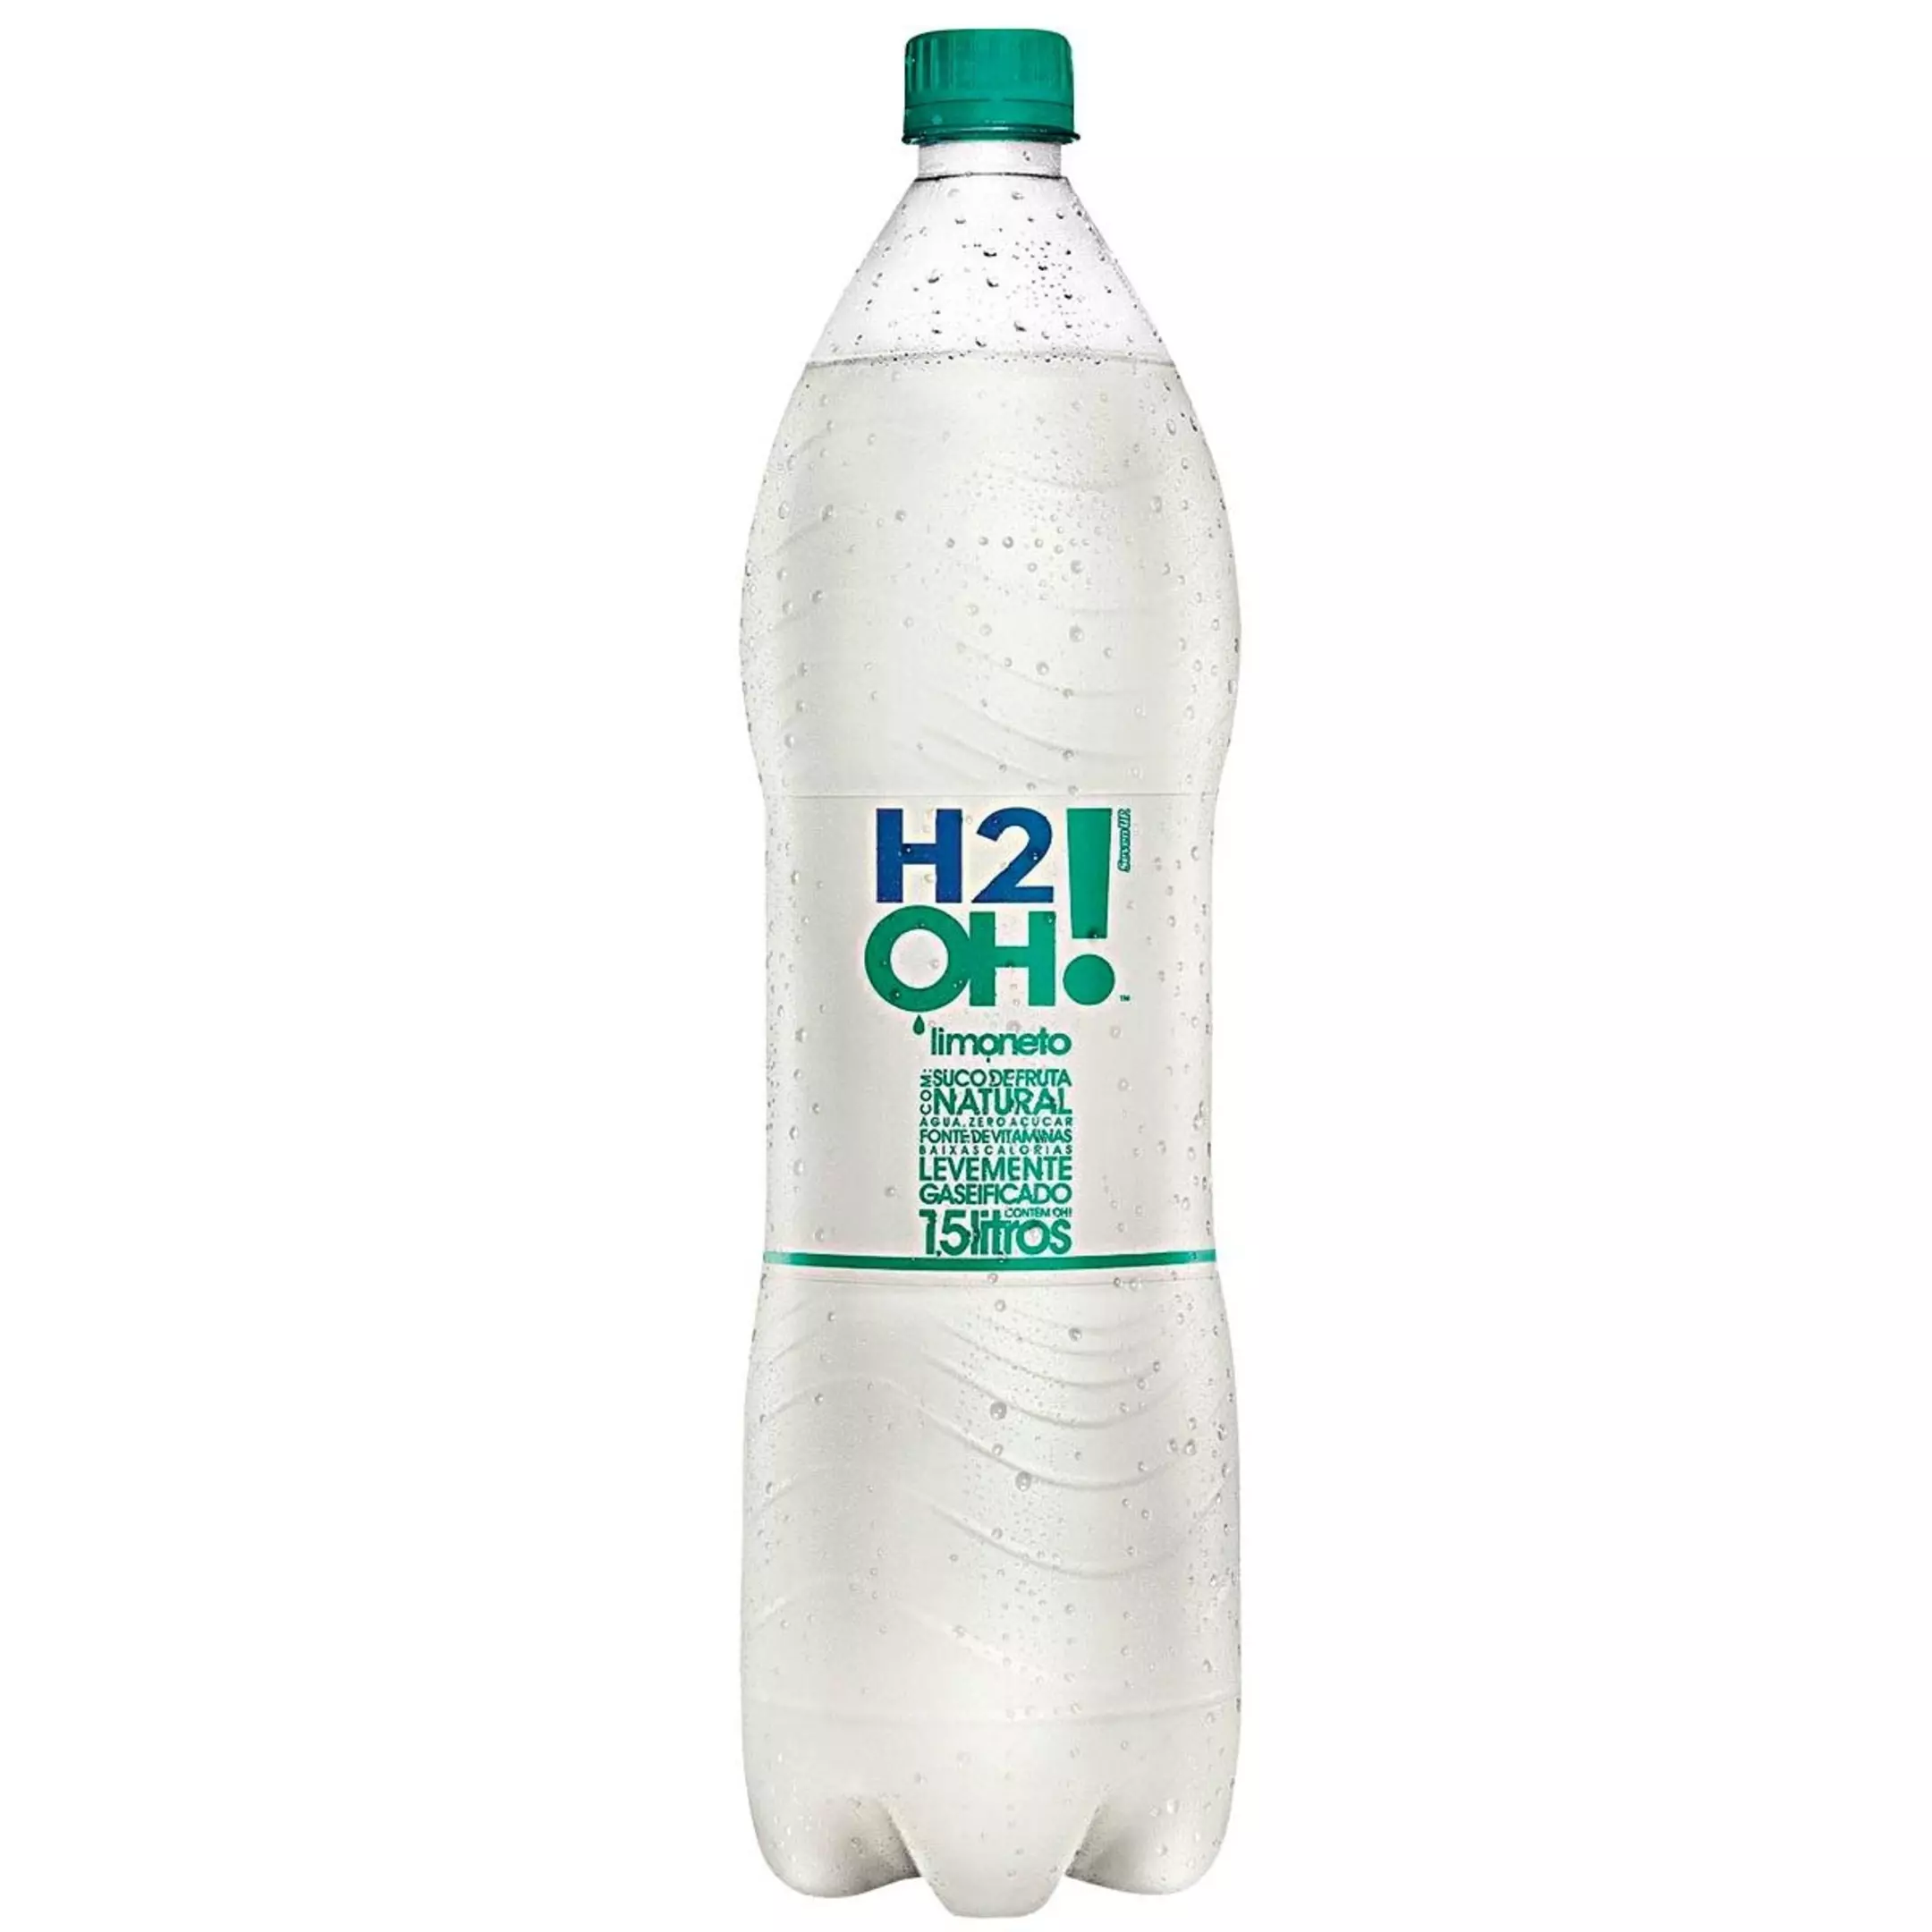 H2O limoneto